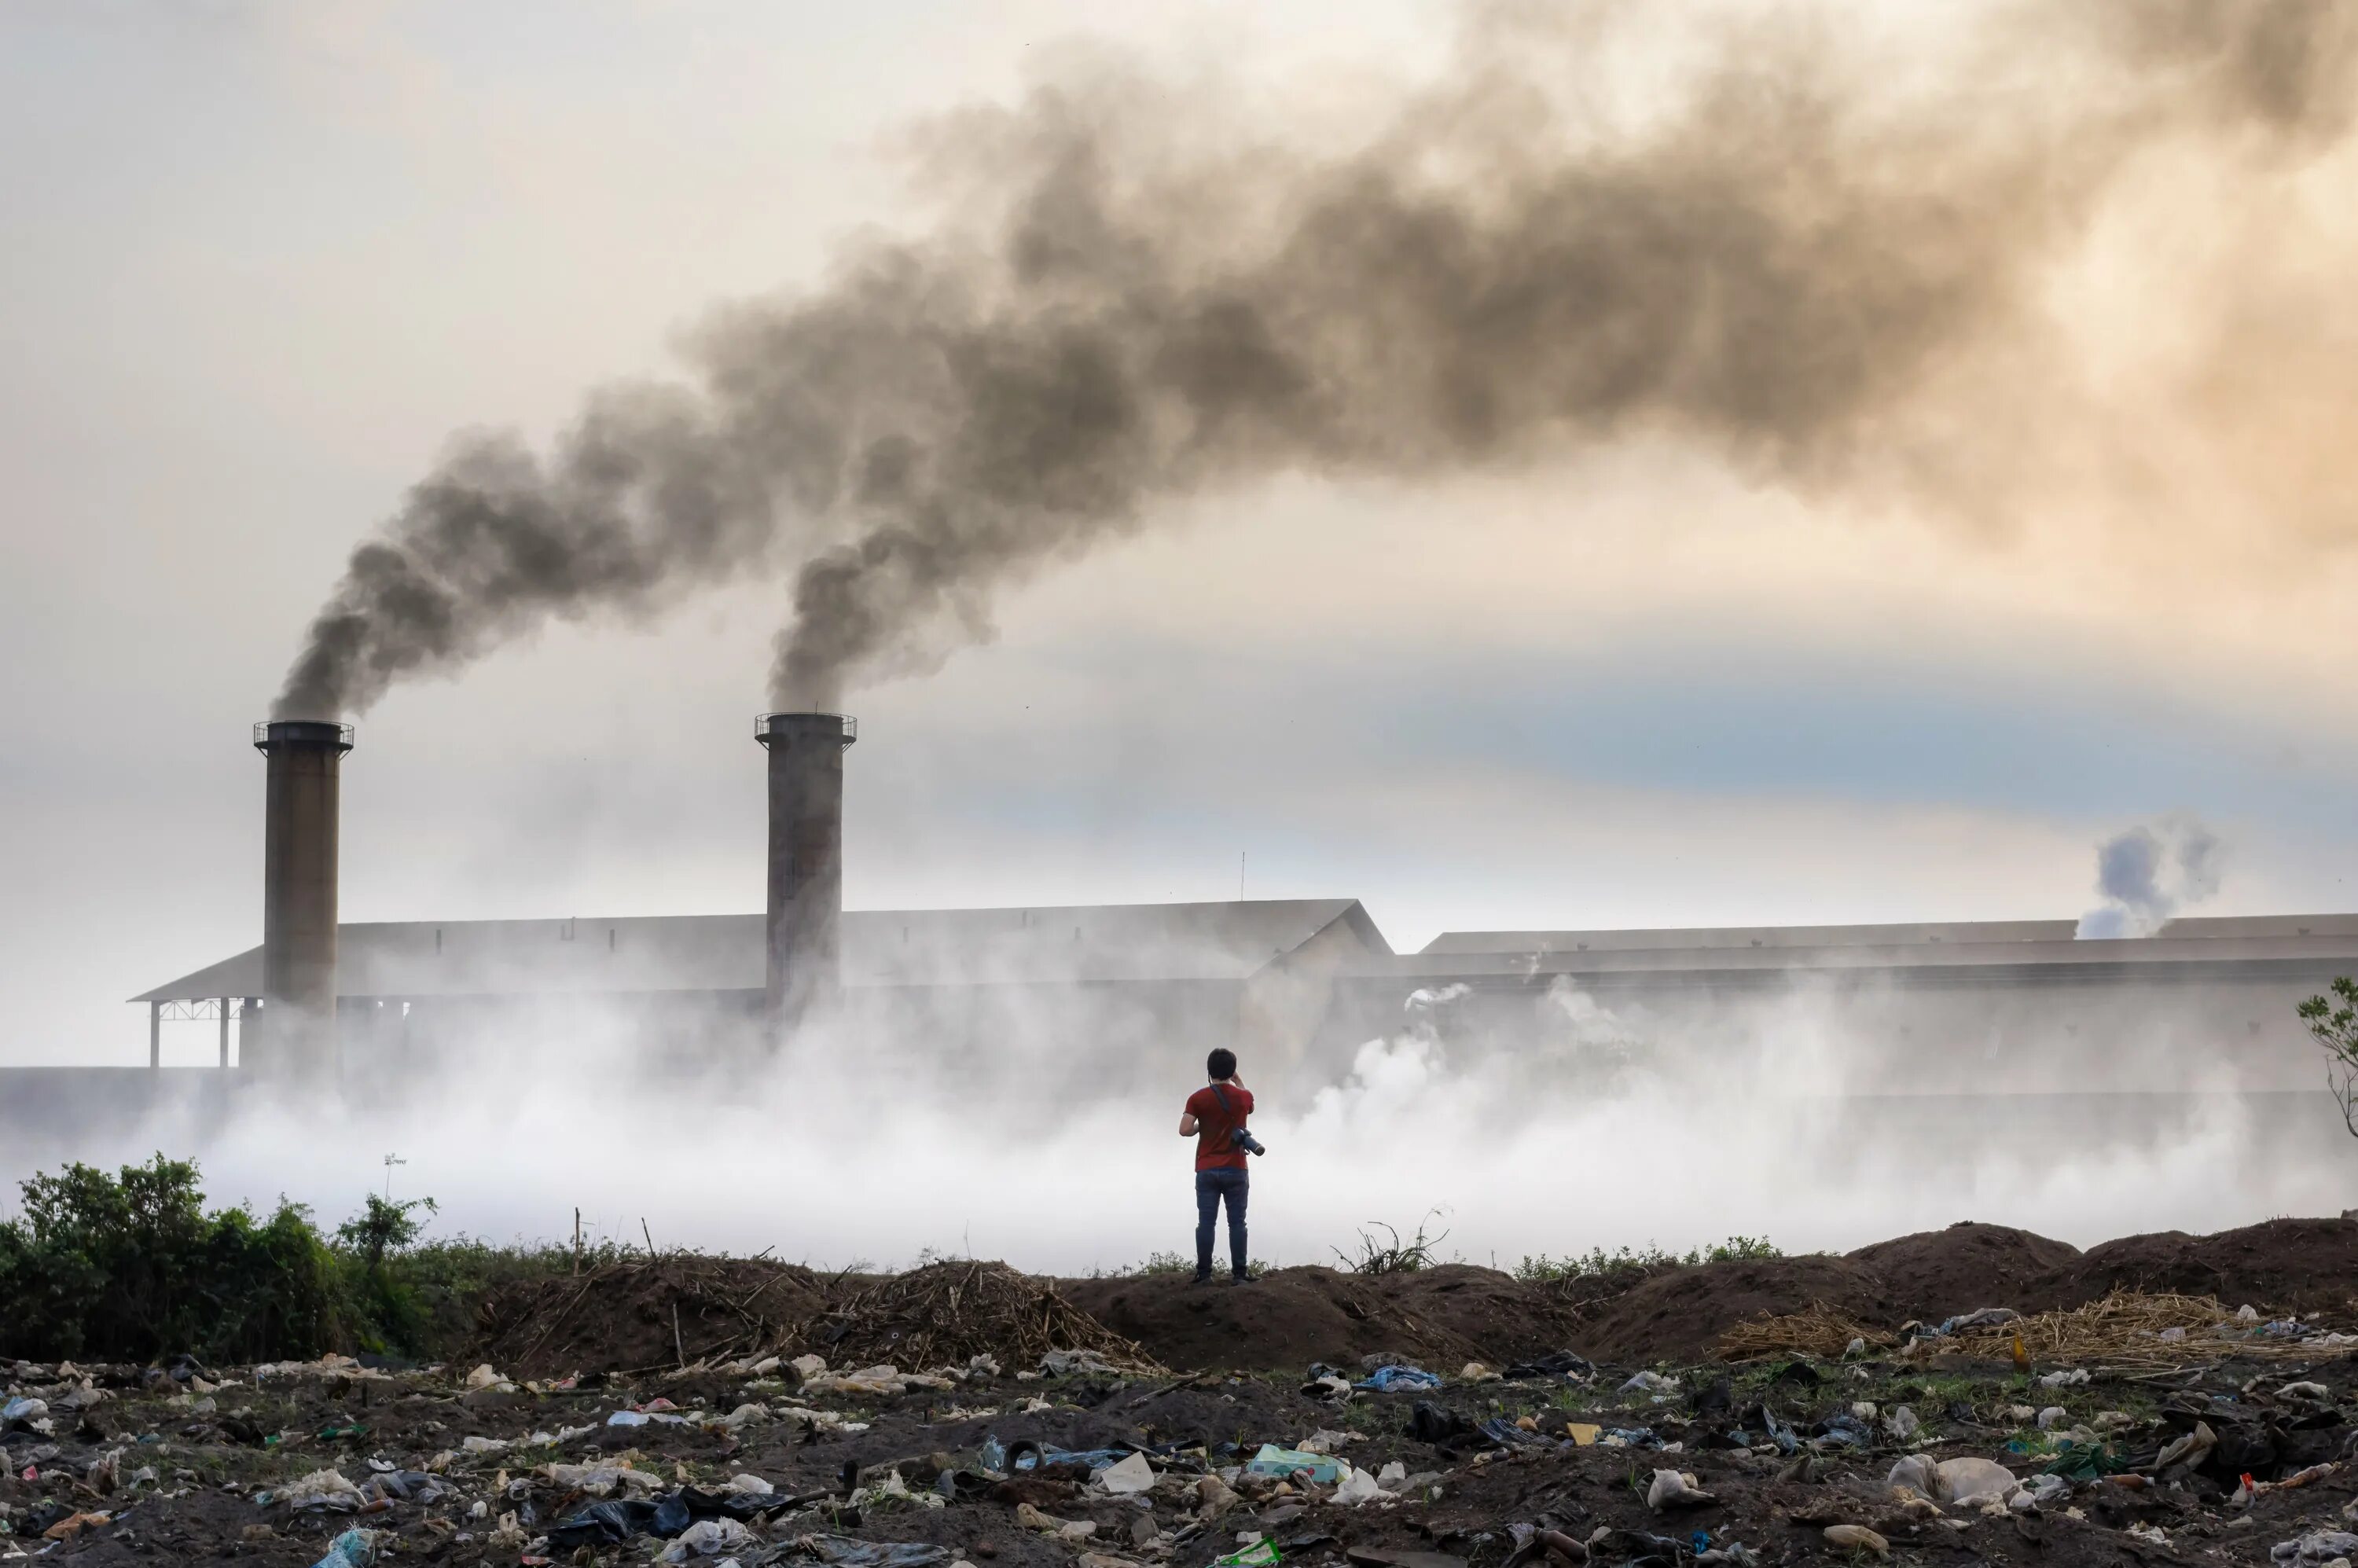 Pollution pictures. Загрязнение воздуха. Химическое загрязнение воздуха. Химическое загрязнение атмосферы. Химические отходы выбросы.